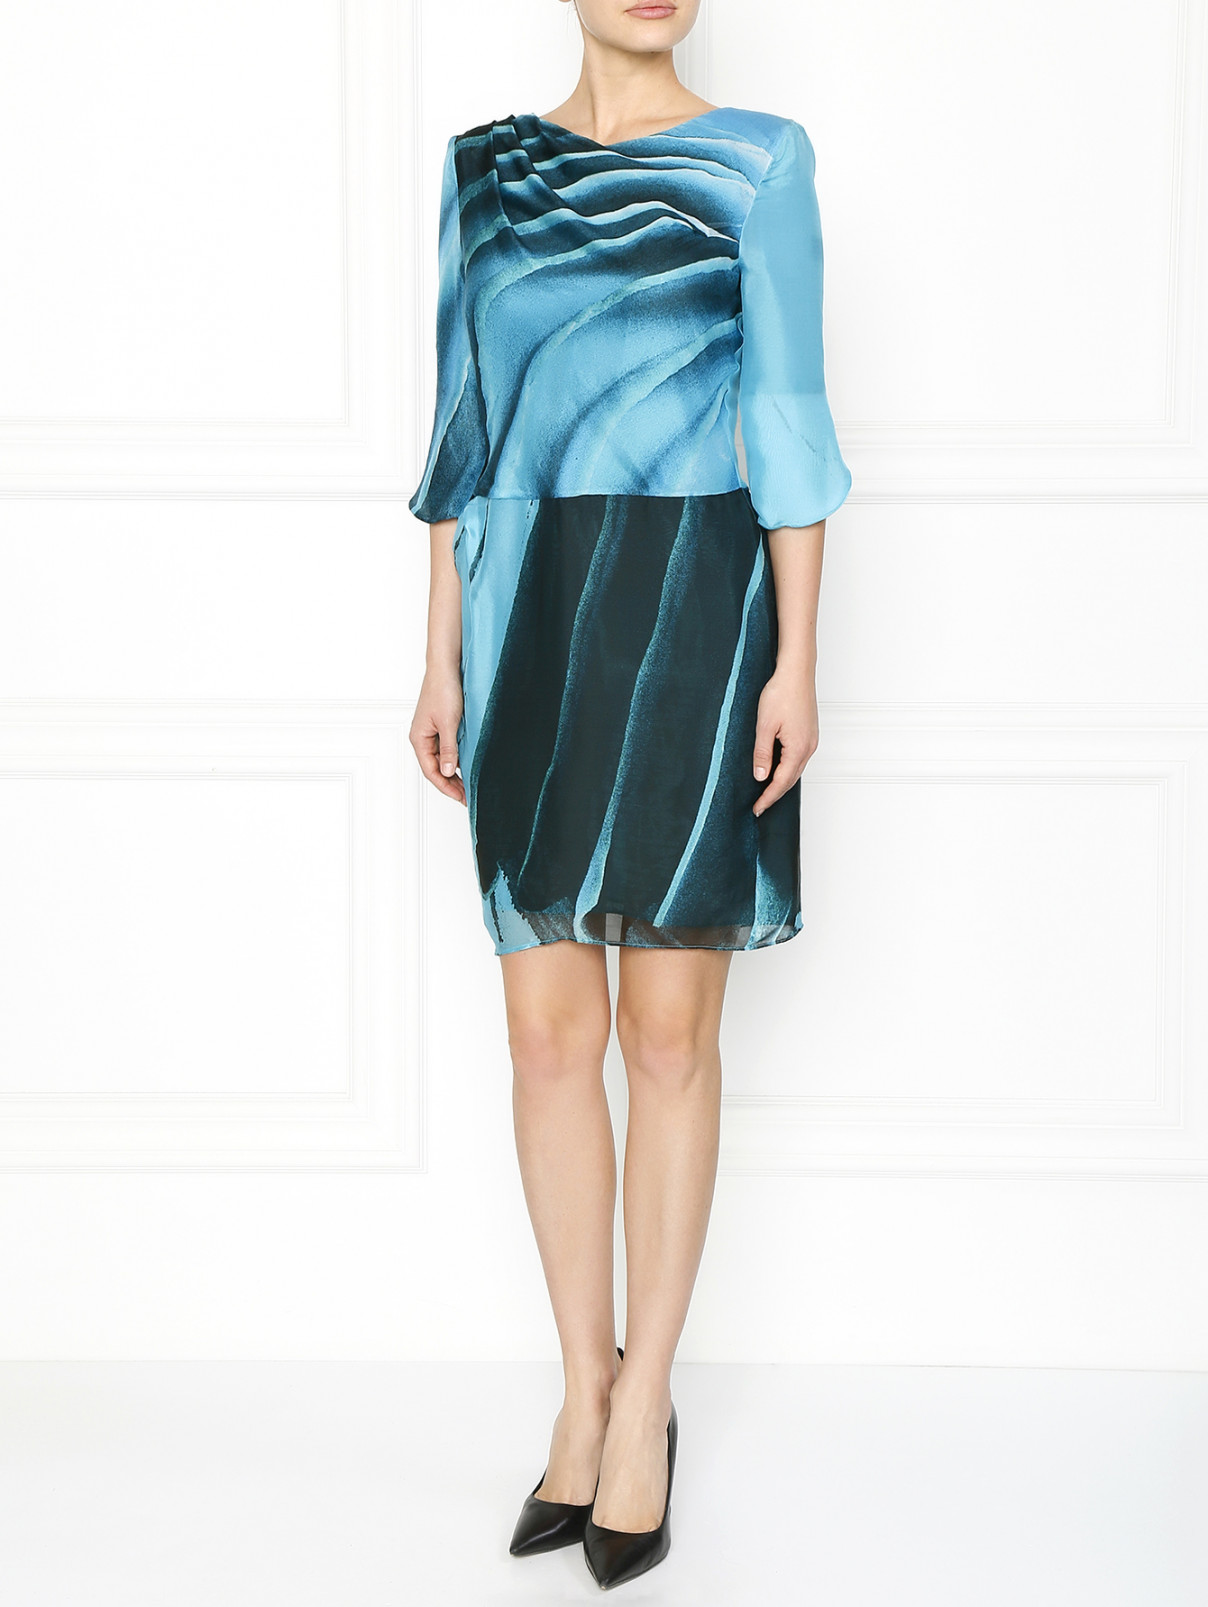 Шелковое платье с принтом Emporio Armani  –  Модель Общий вид  – Цвет:  Синий